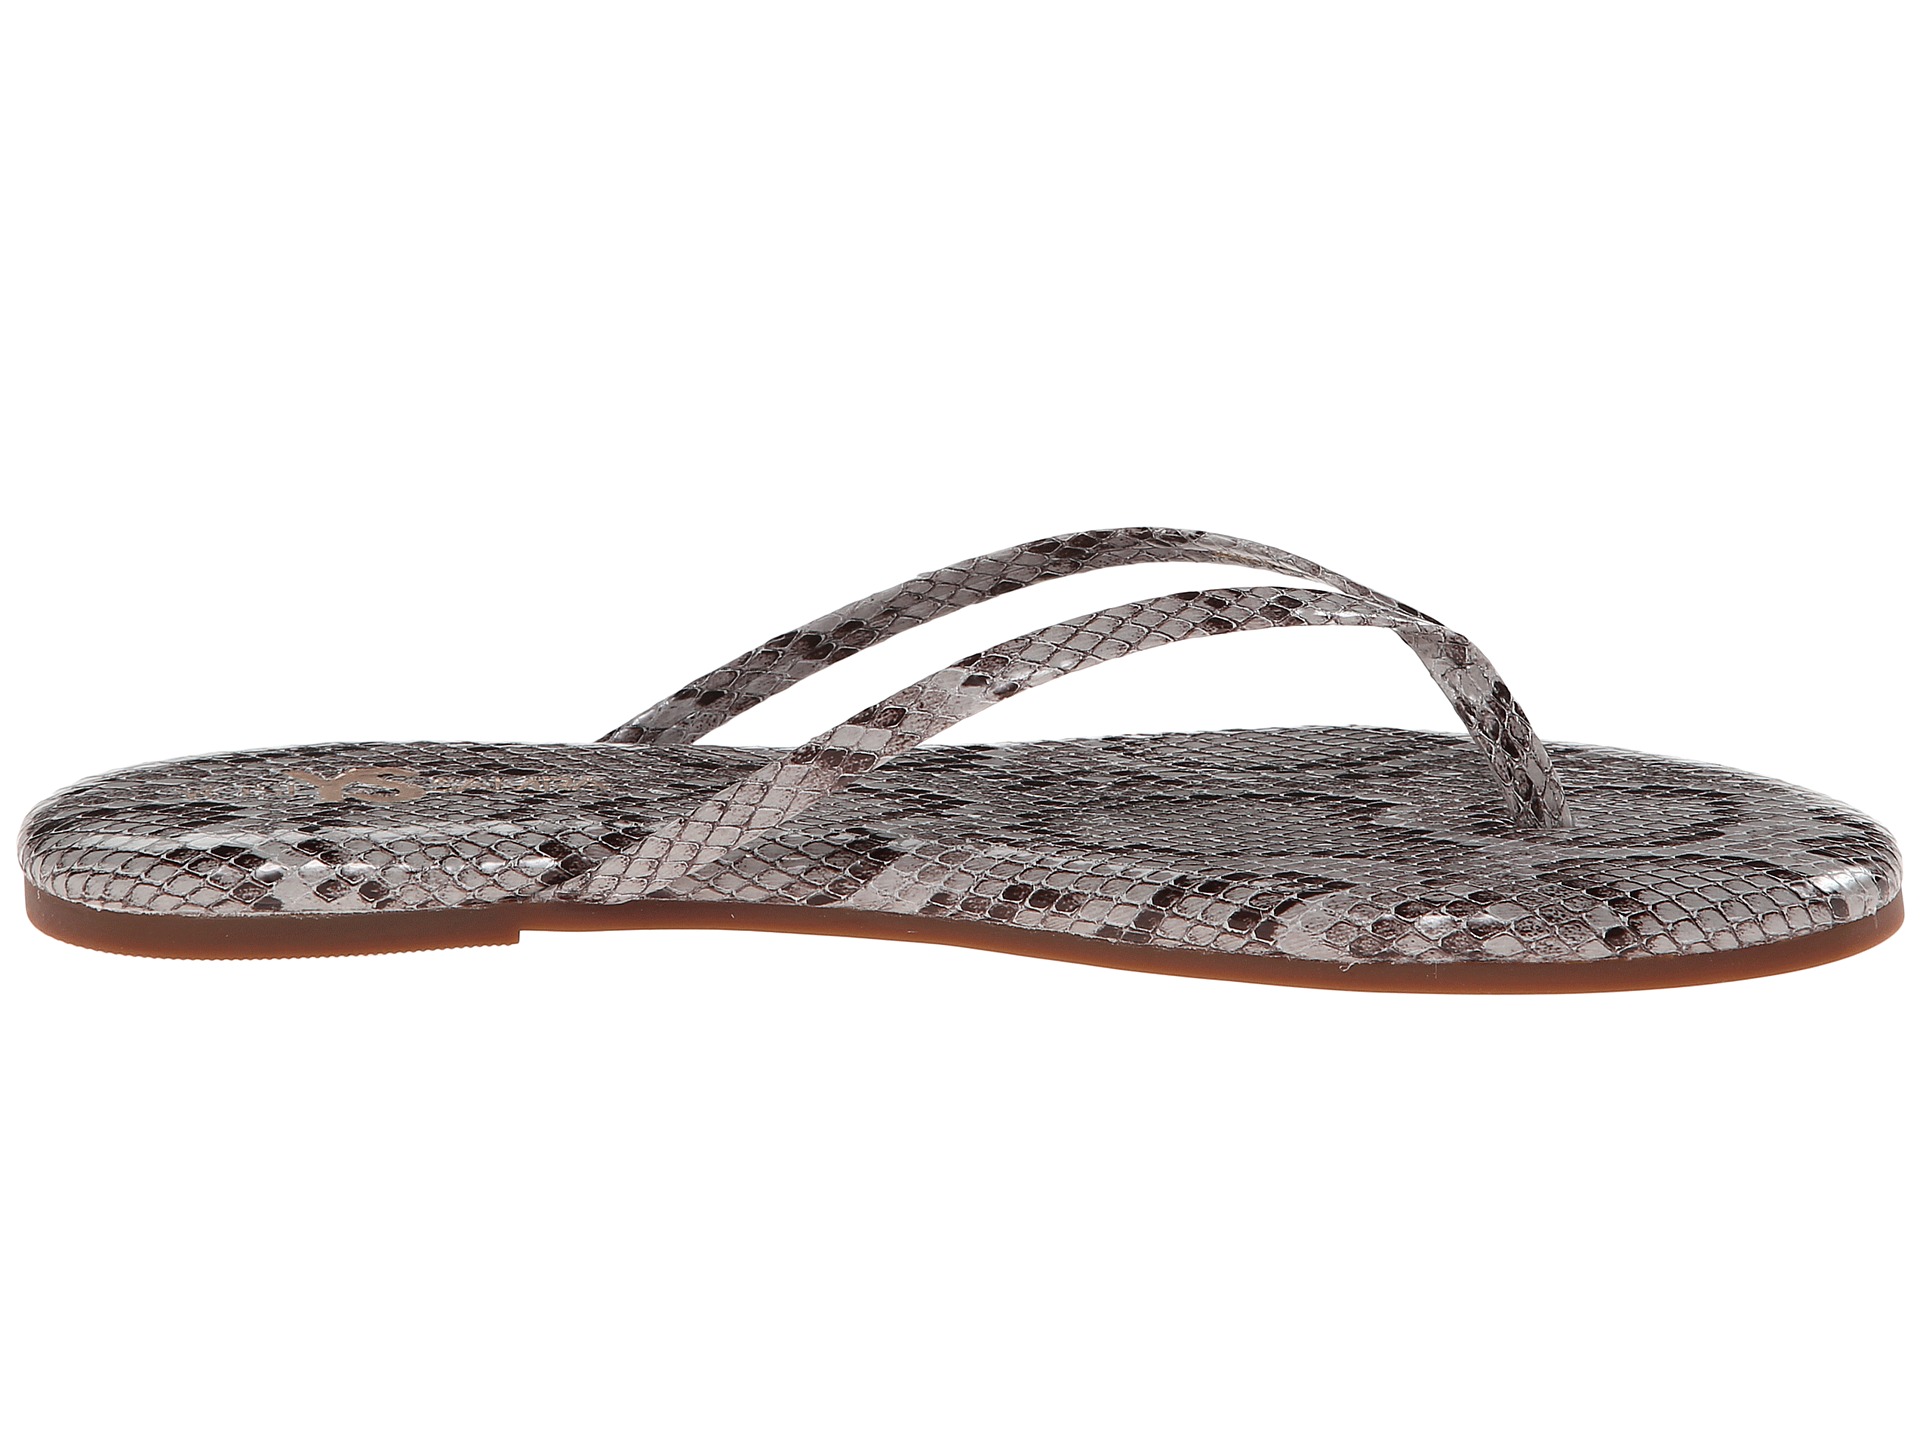 Yosi Samra Roee Snake Leather Flip Flop Smoke - Zappos.com Free ...